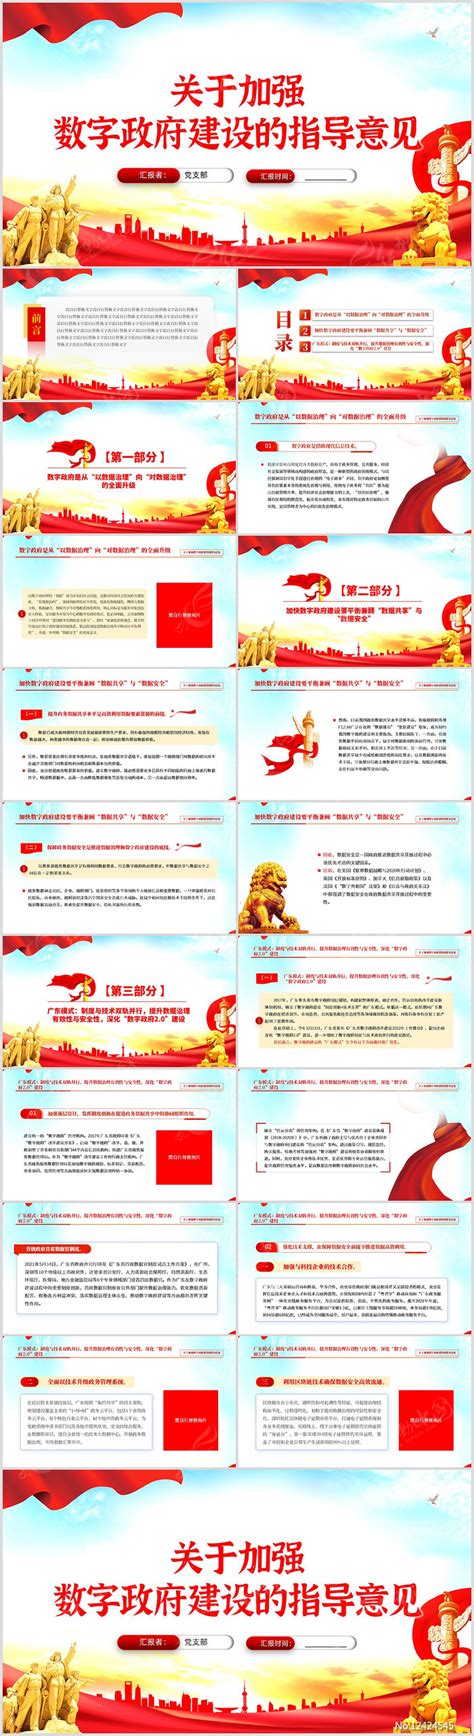 数字中国——数字化时代